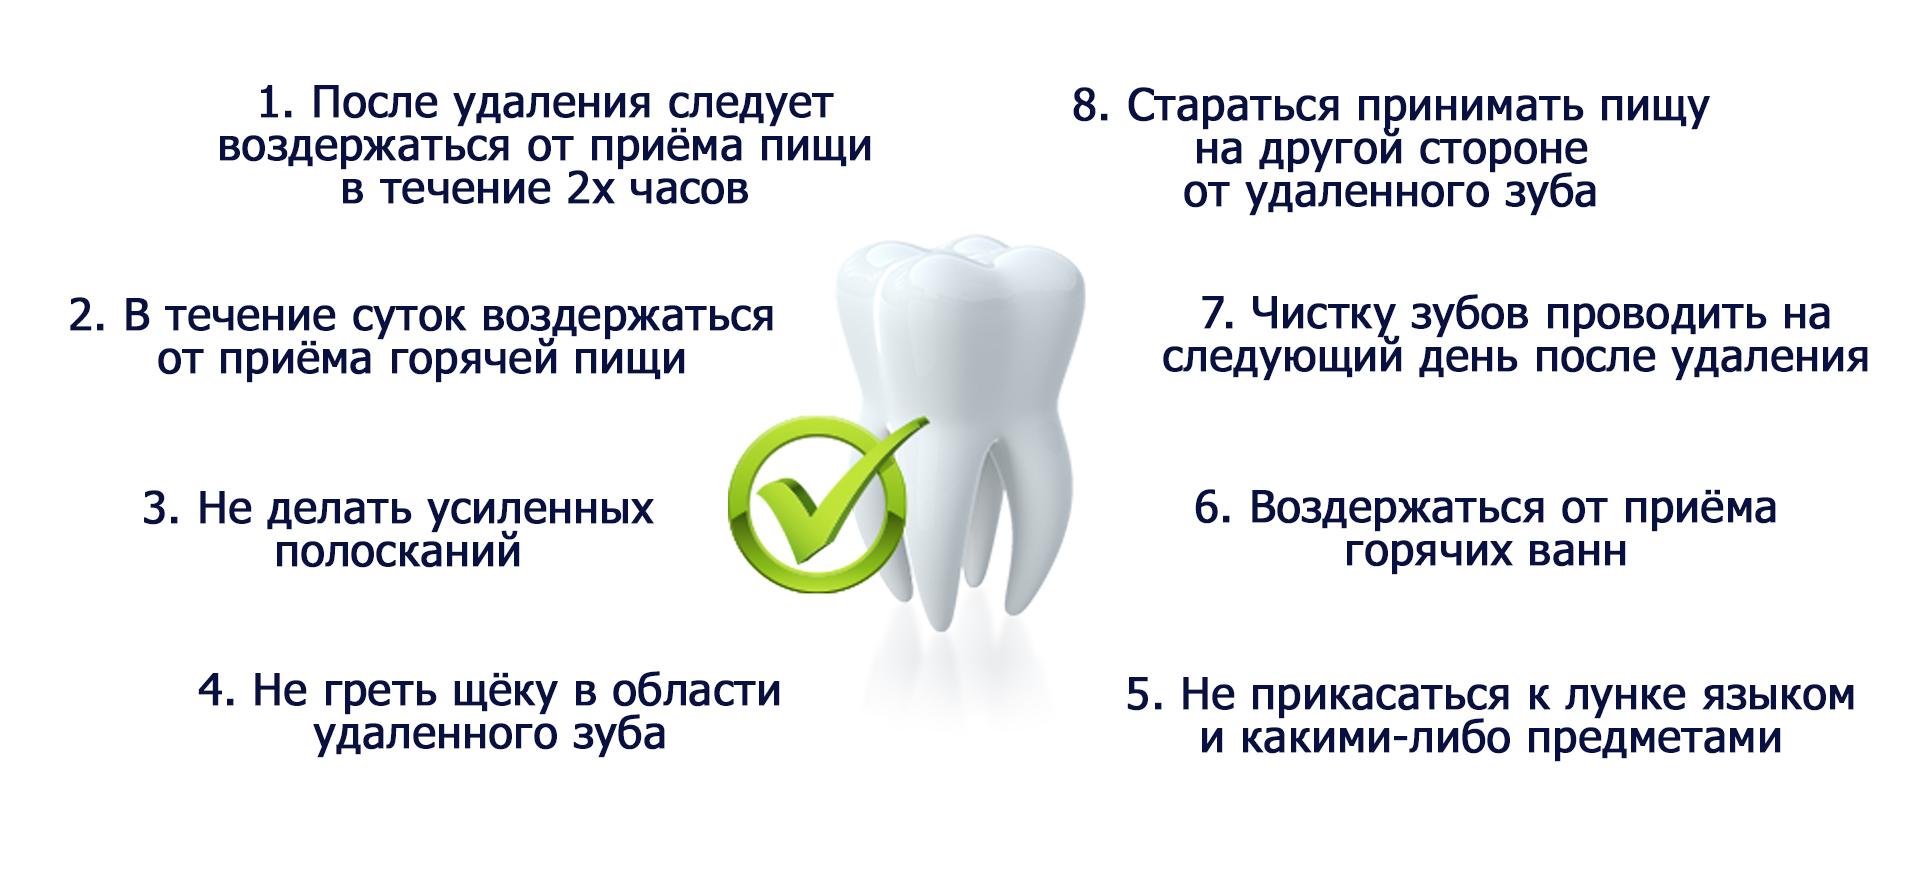 Алкоголь после удаления зуба: рекомендации и последствия употребления